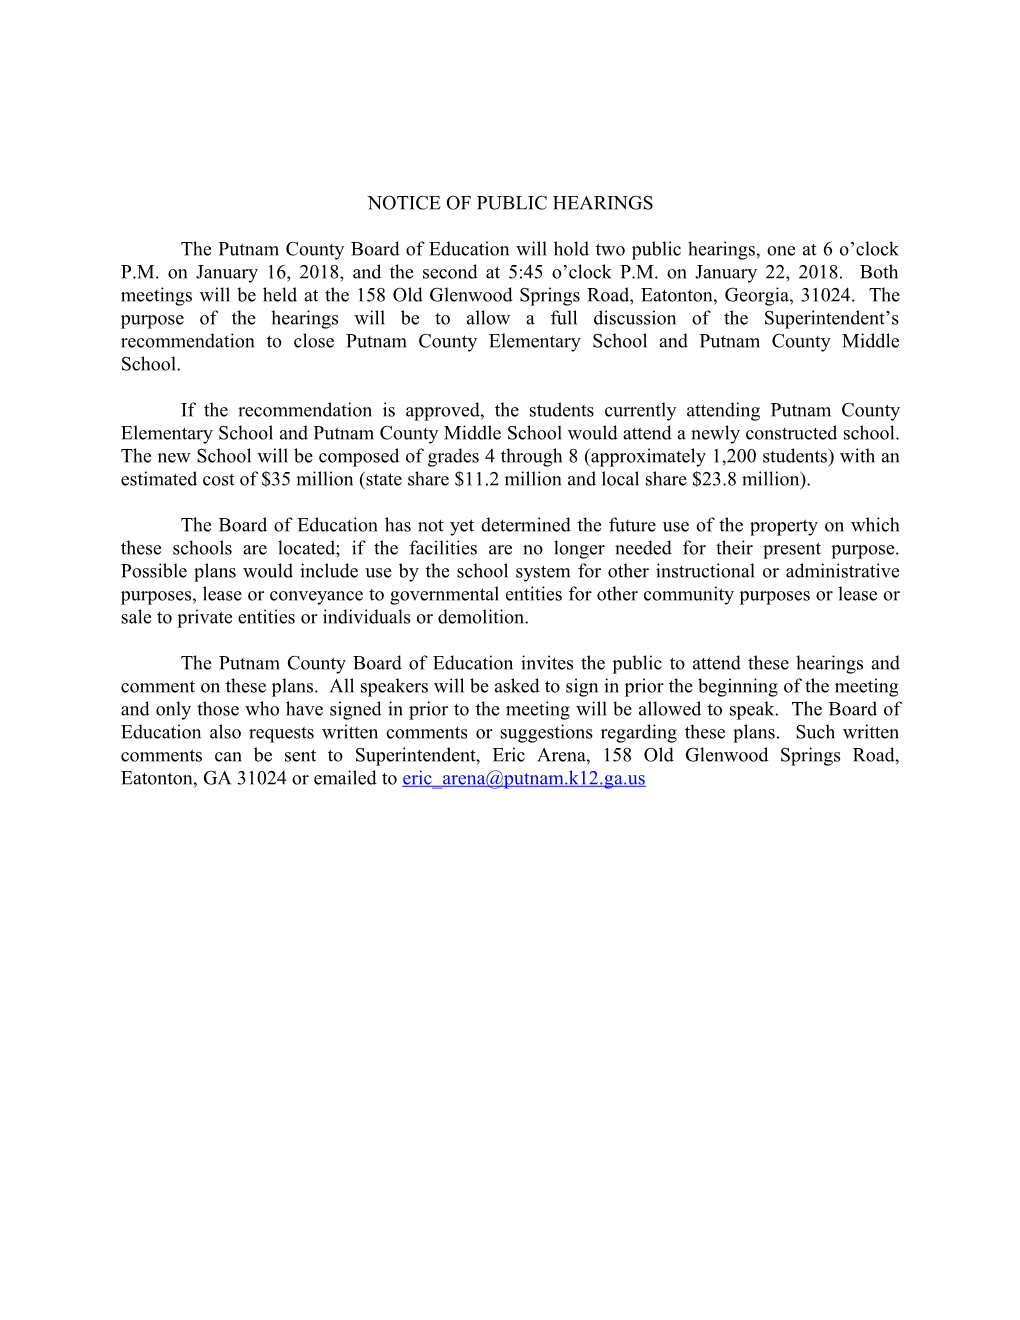 Notice of Public Hearings - School Closing (H311178)